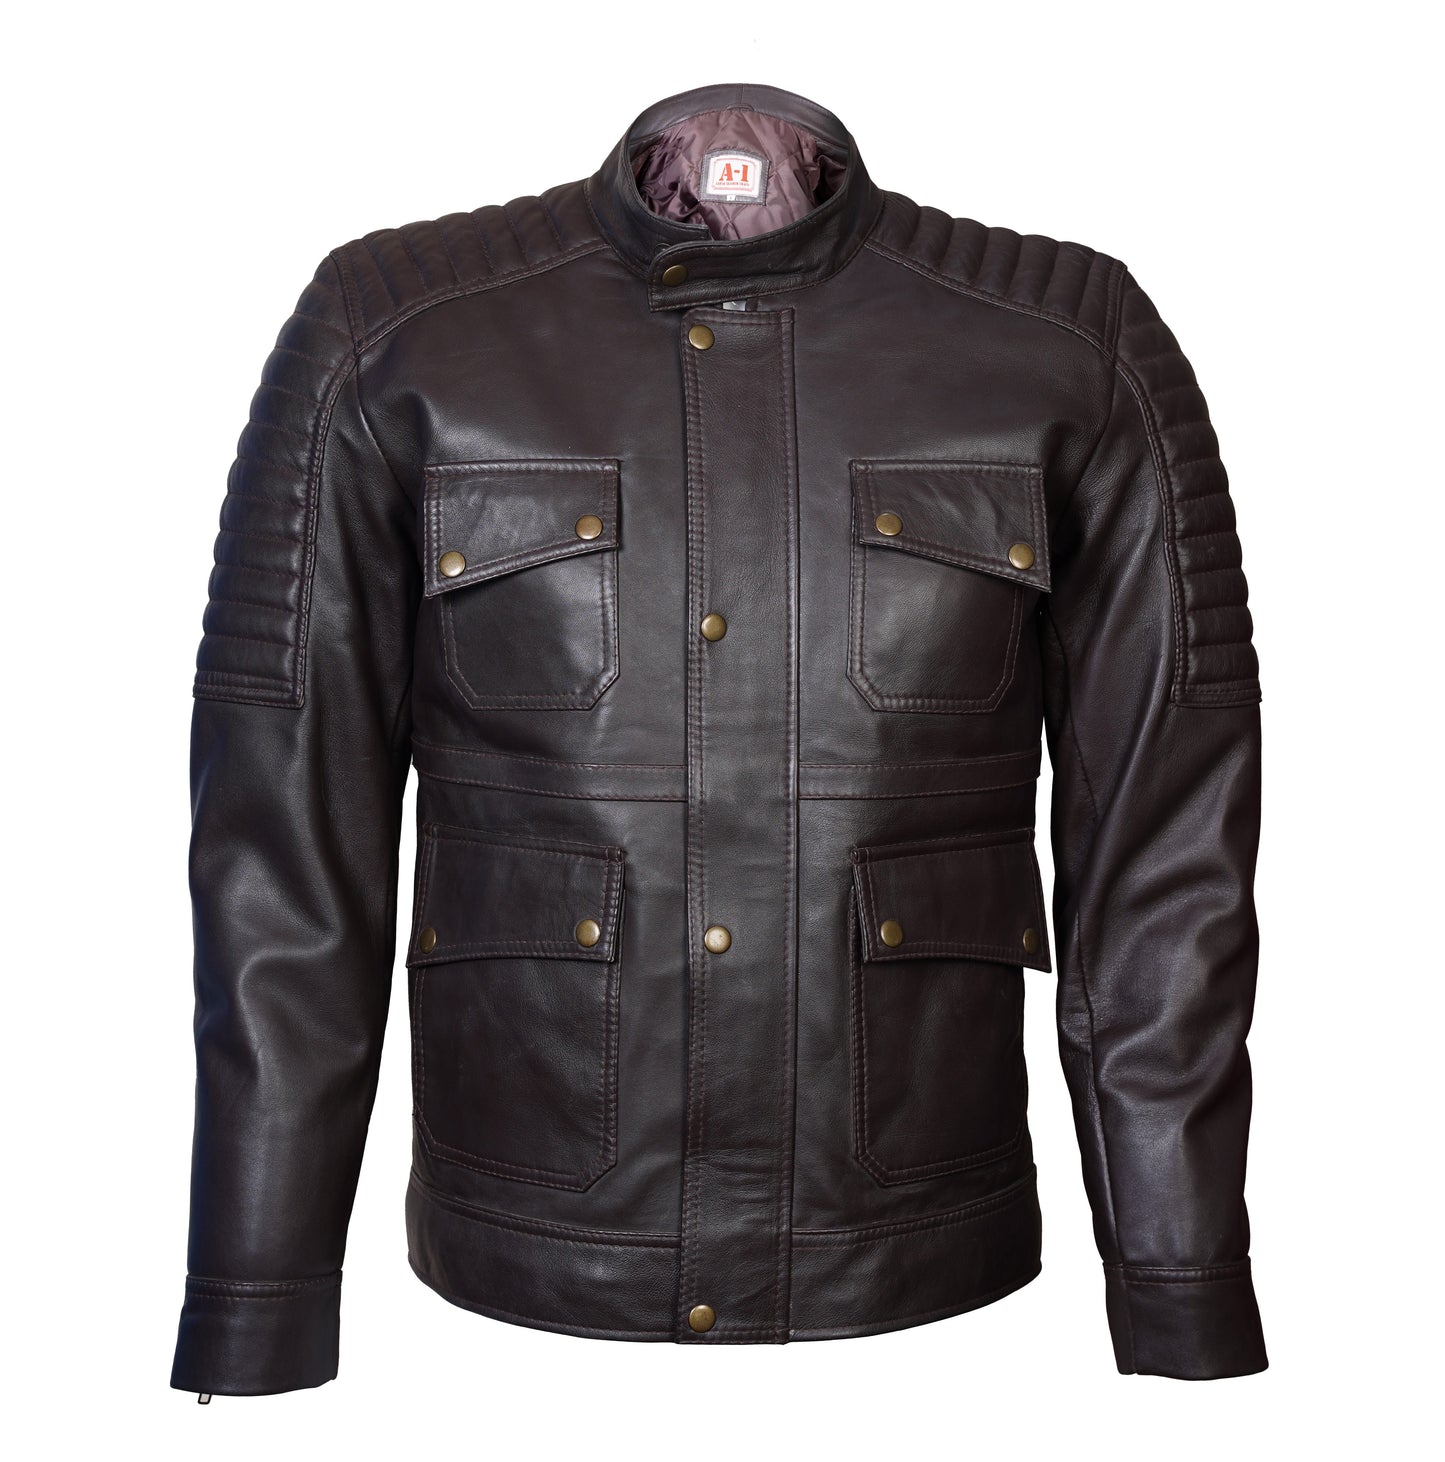 Buy Best Rider Black Fashion Lather Jacket